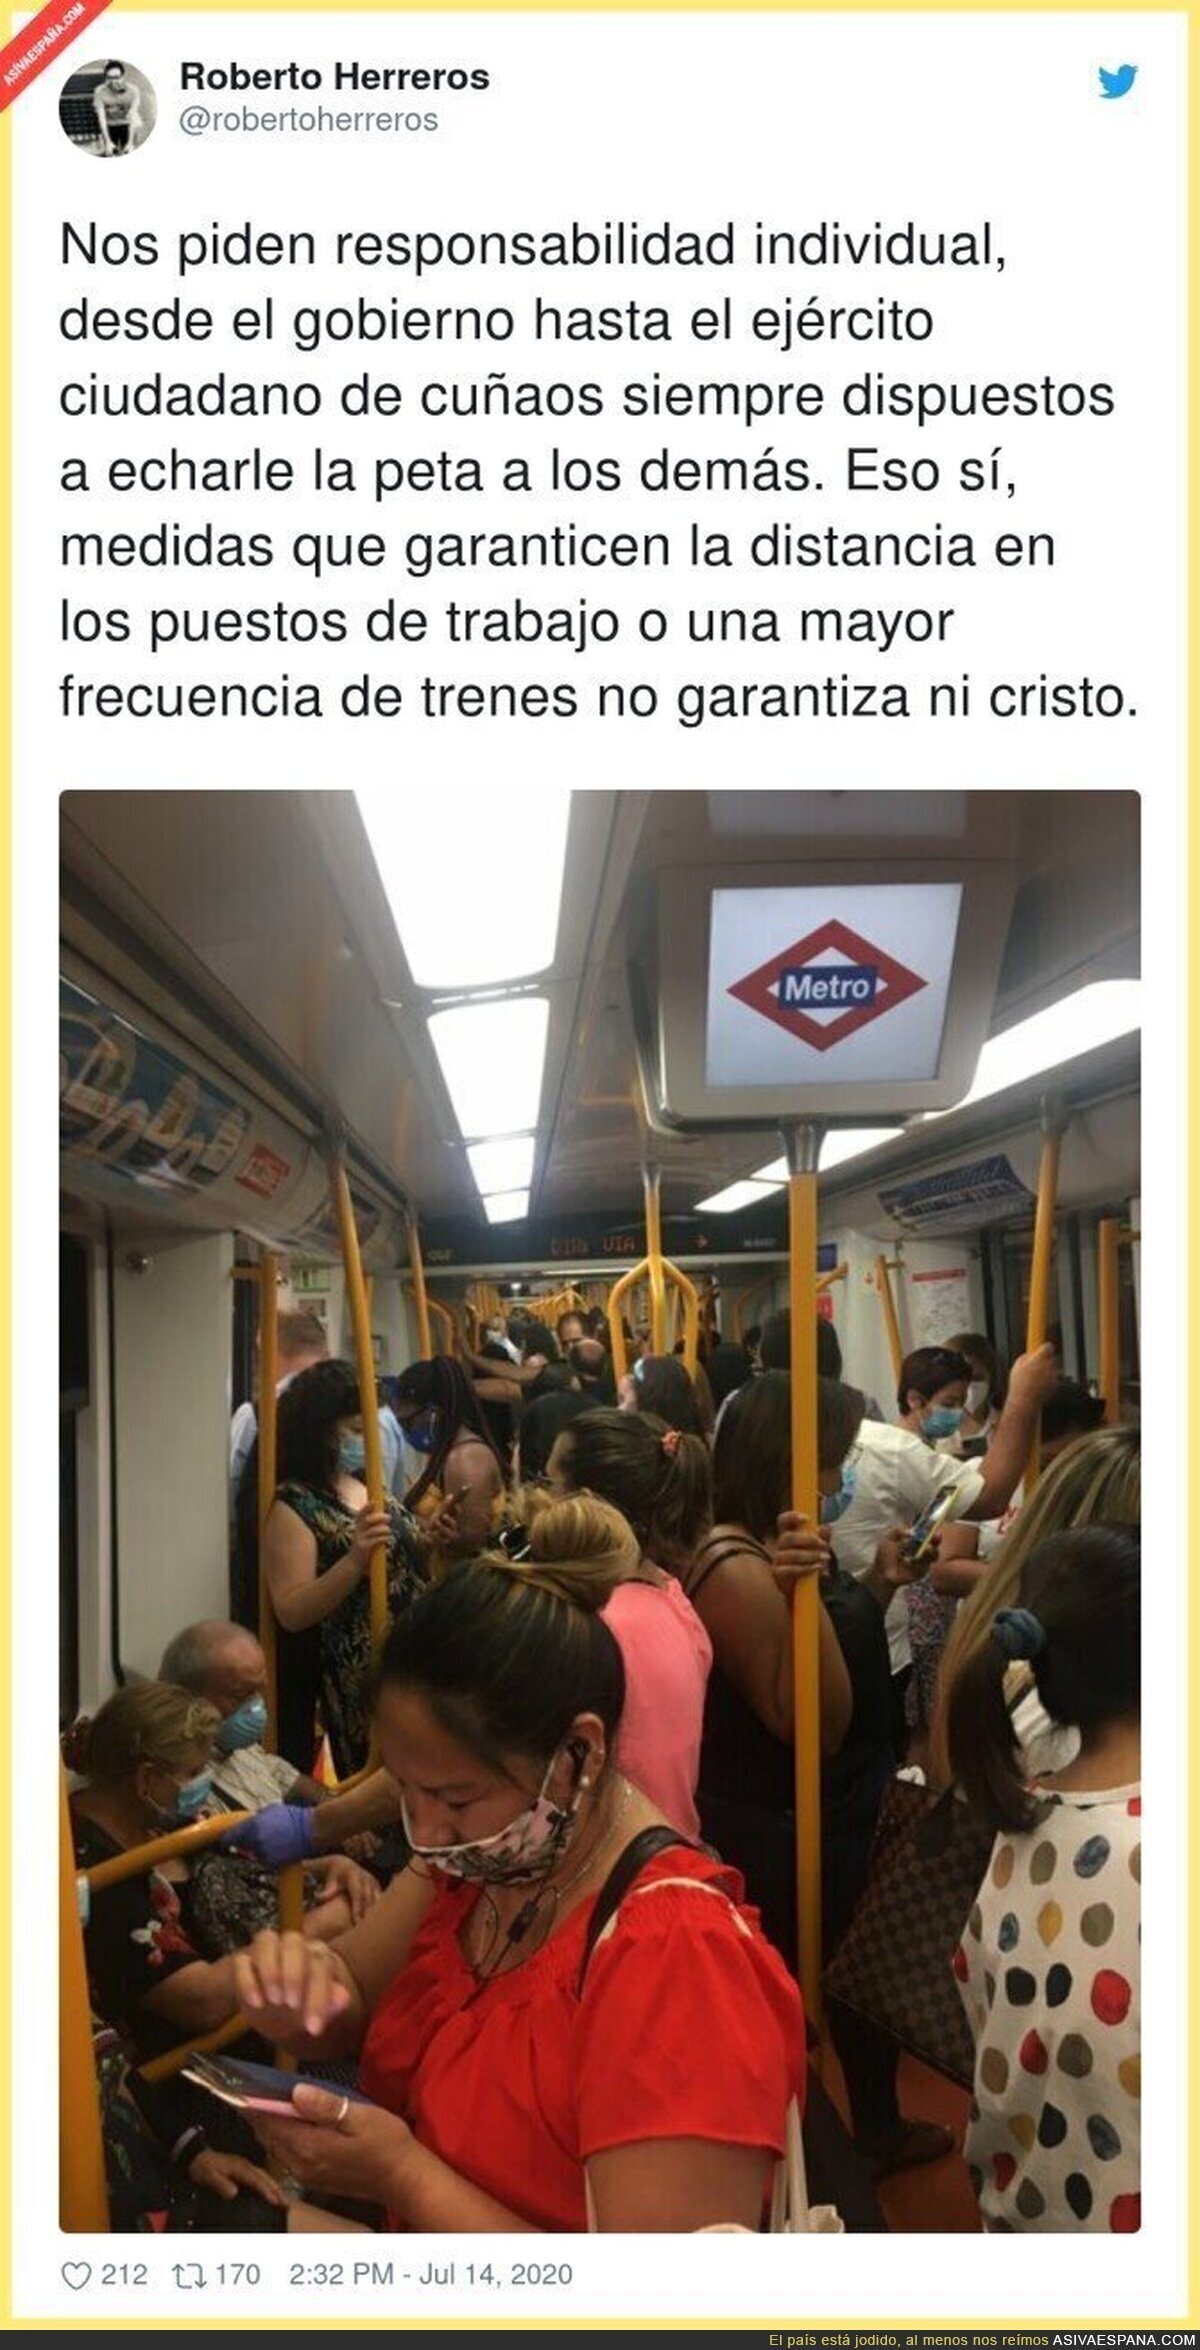 Así está el Metro de Madrid a cada instante y nadie hace nada